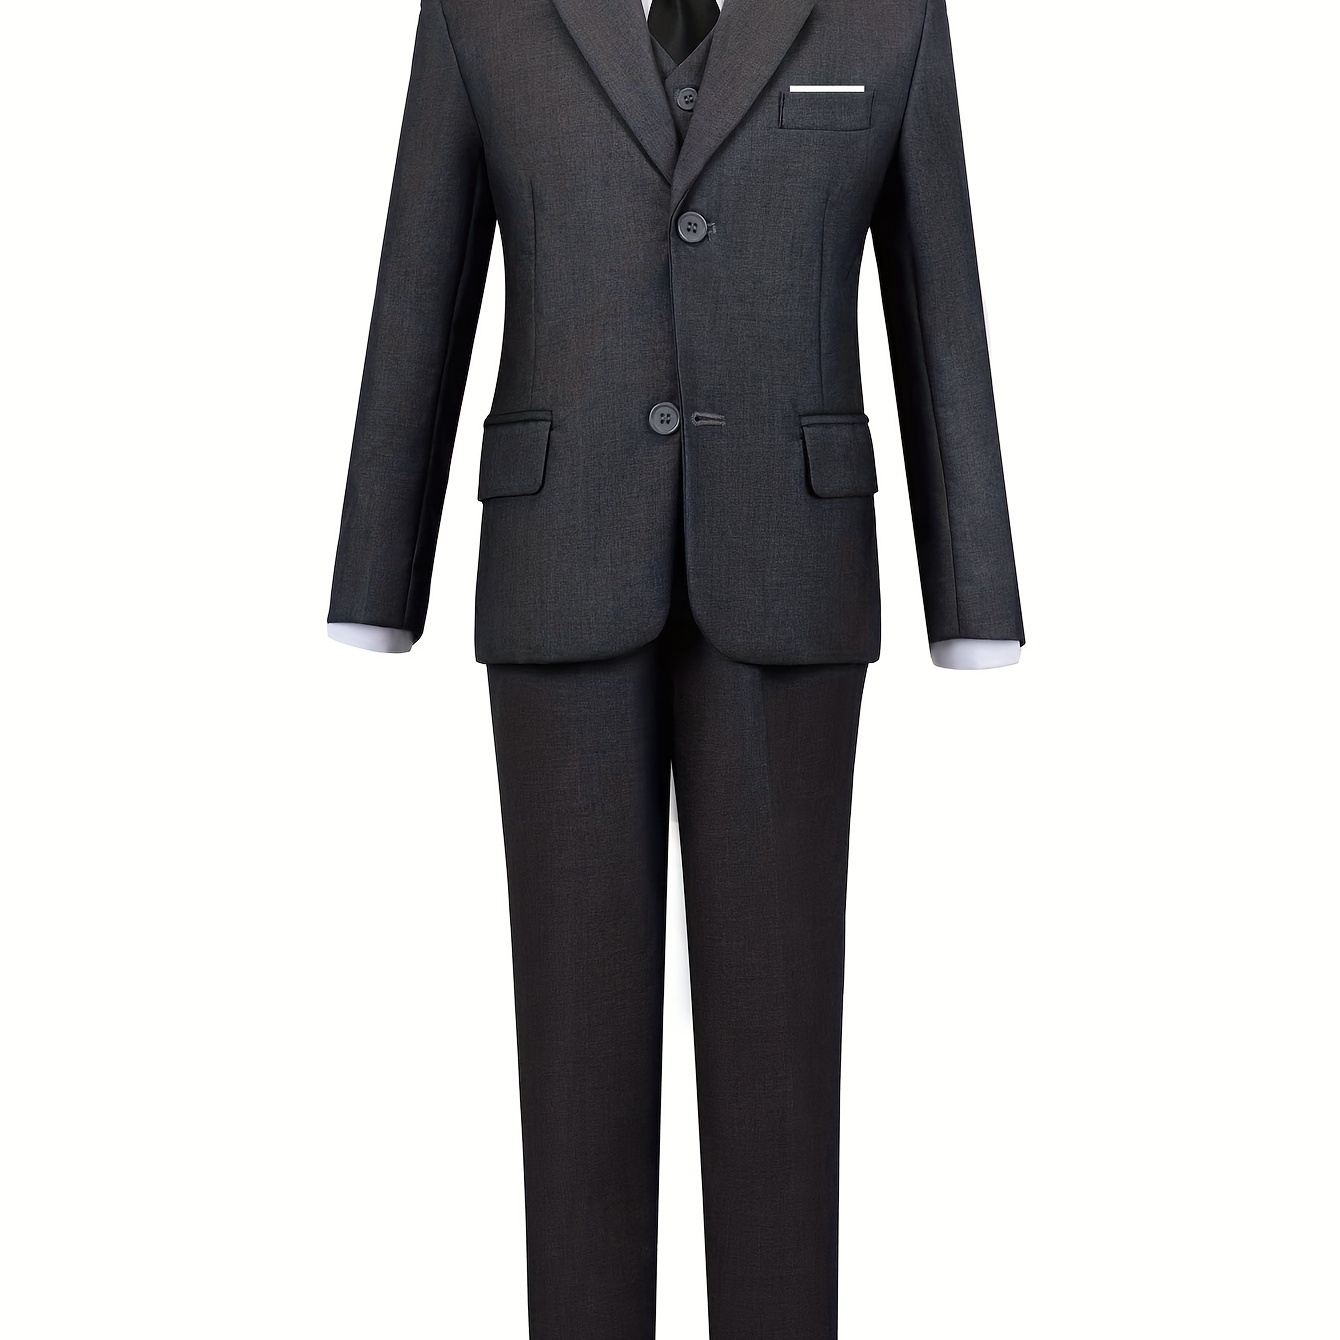 

Boys Dark Gray Suit 5 Piece Suit Vest Shirt Pants Black Tie